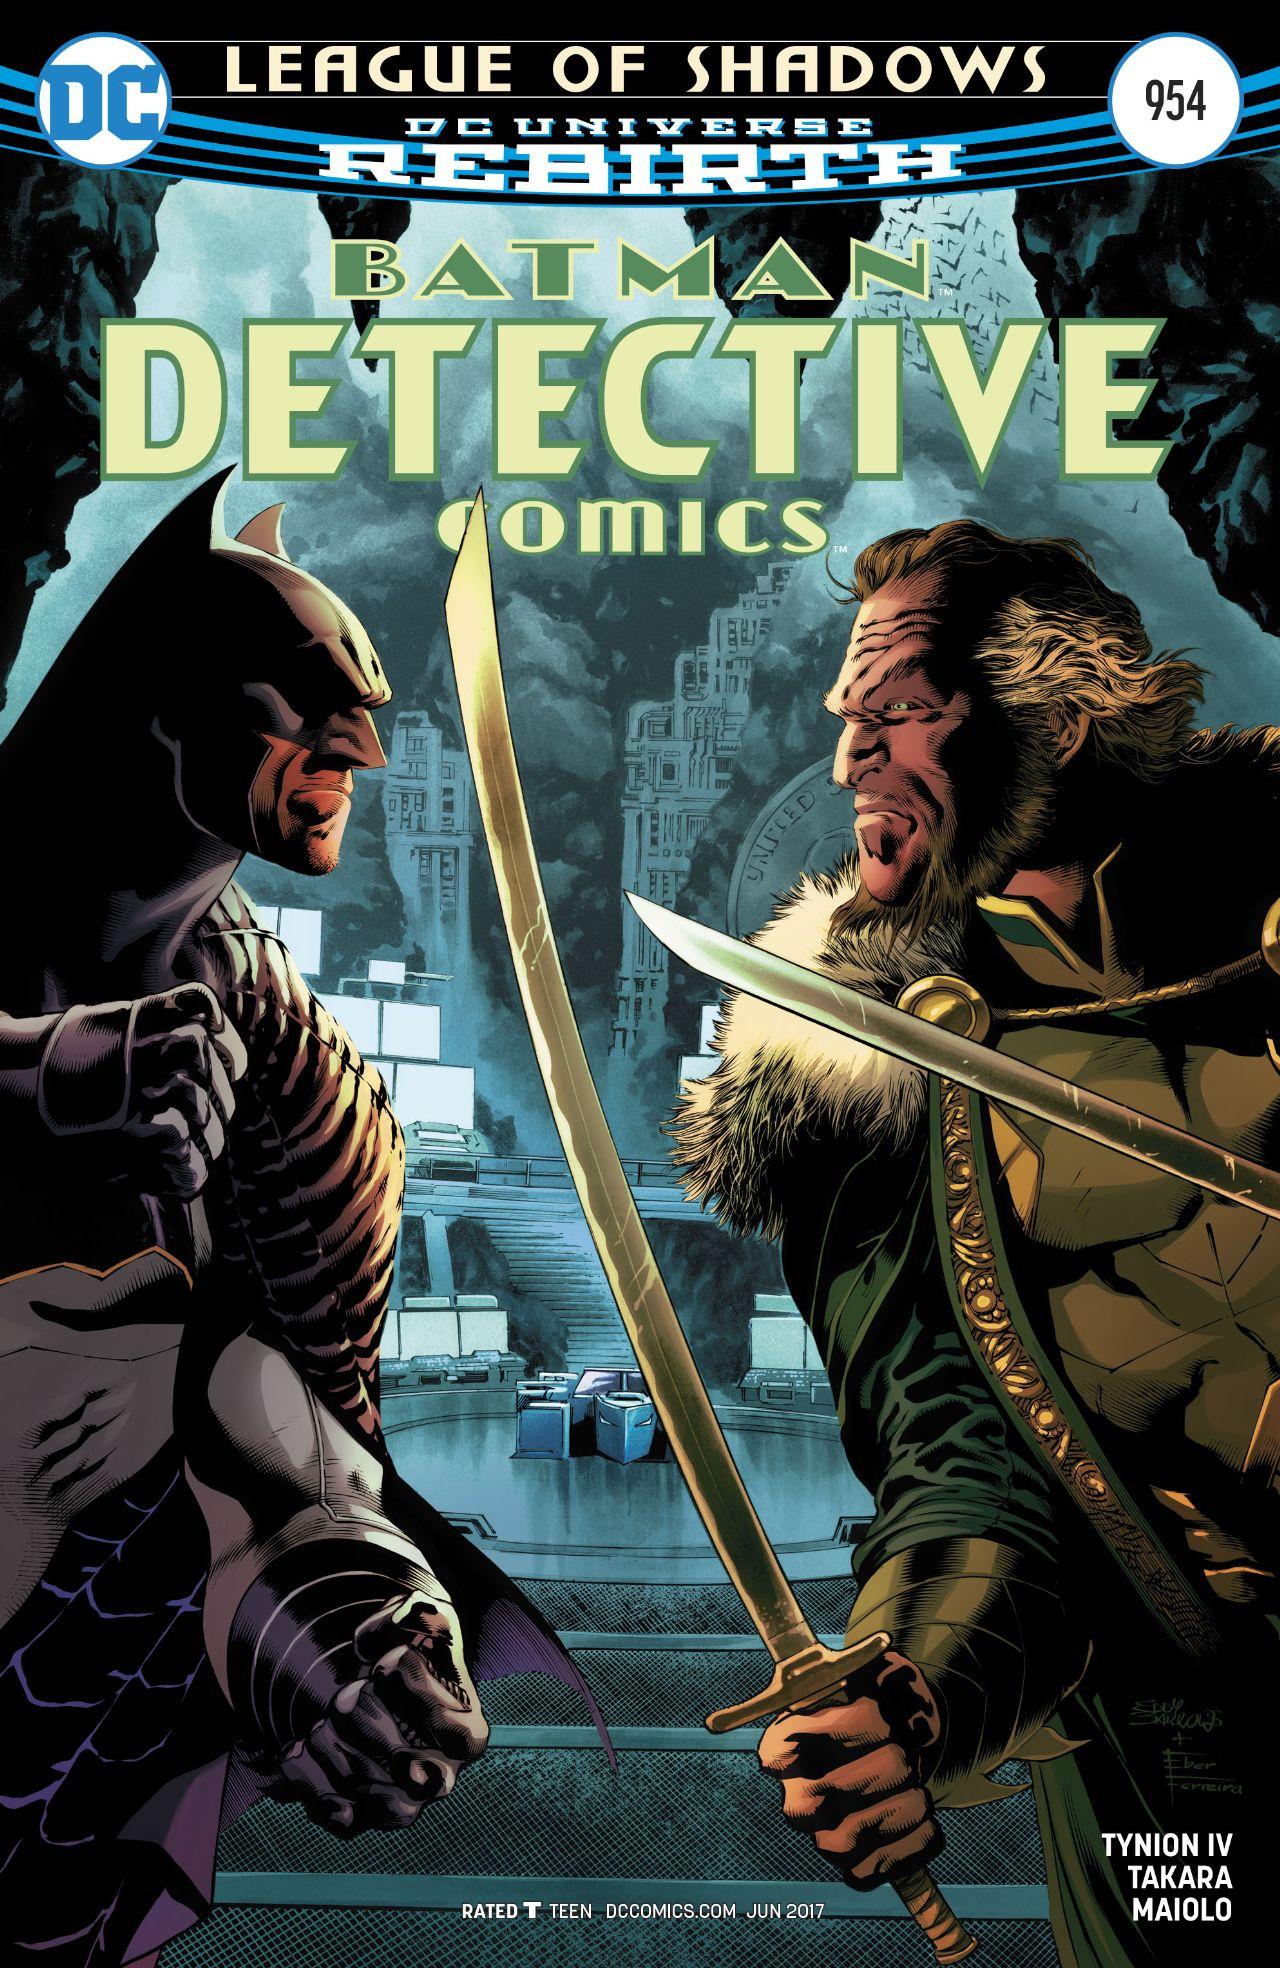 Detective Comics Vol. 1 #954